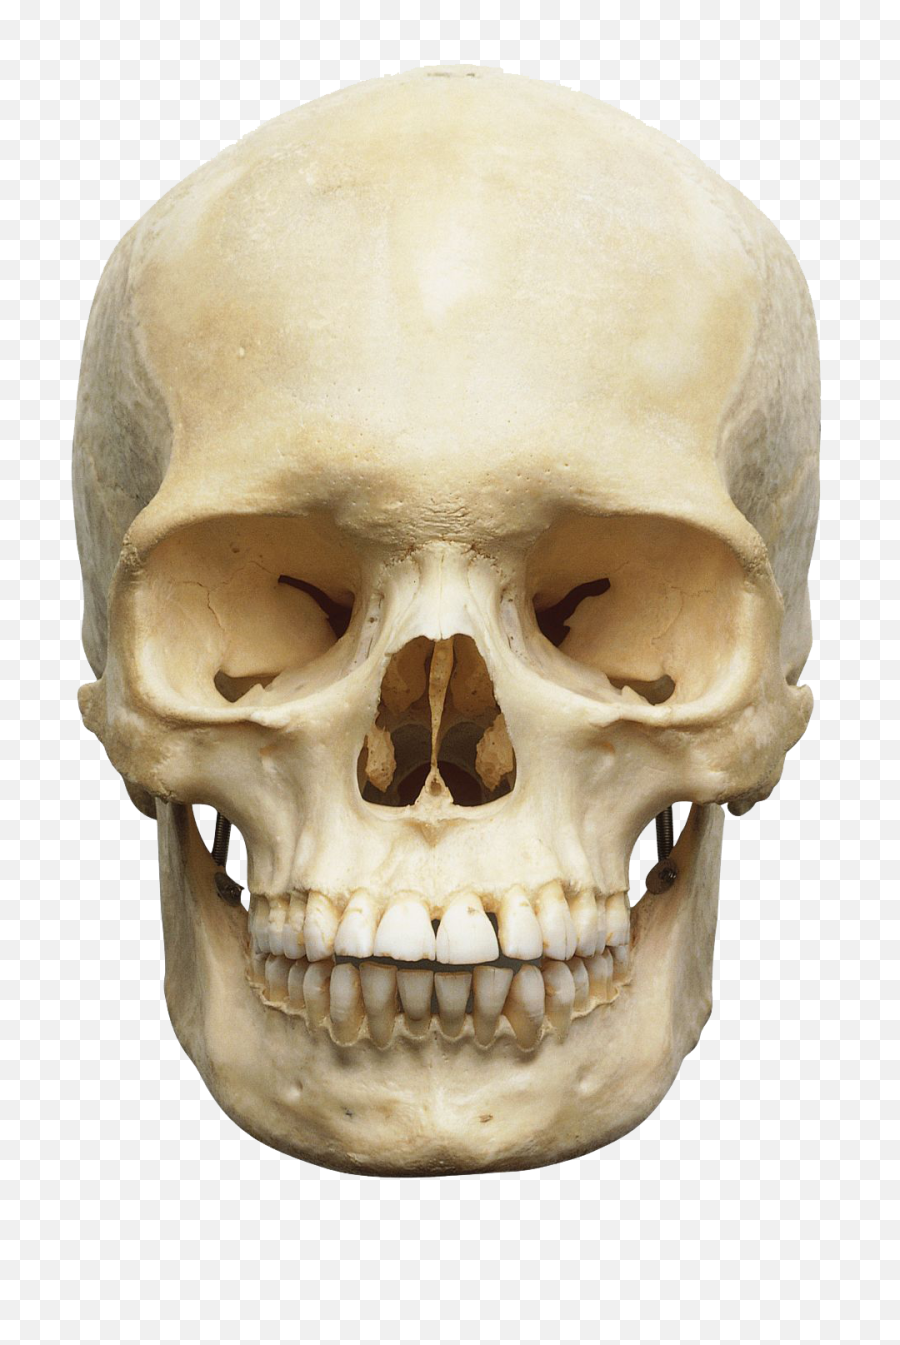 Download Free Png Skull - Head Skeleton Png,Skull Face Png